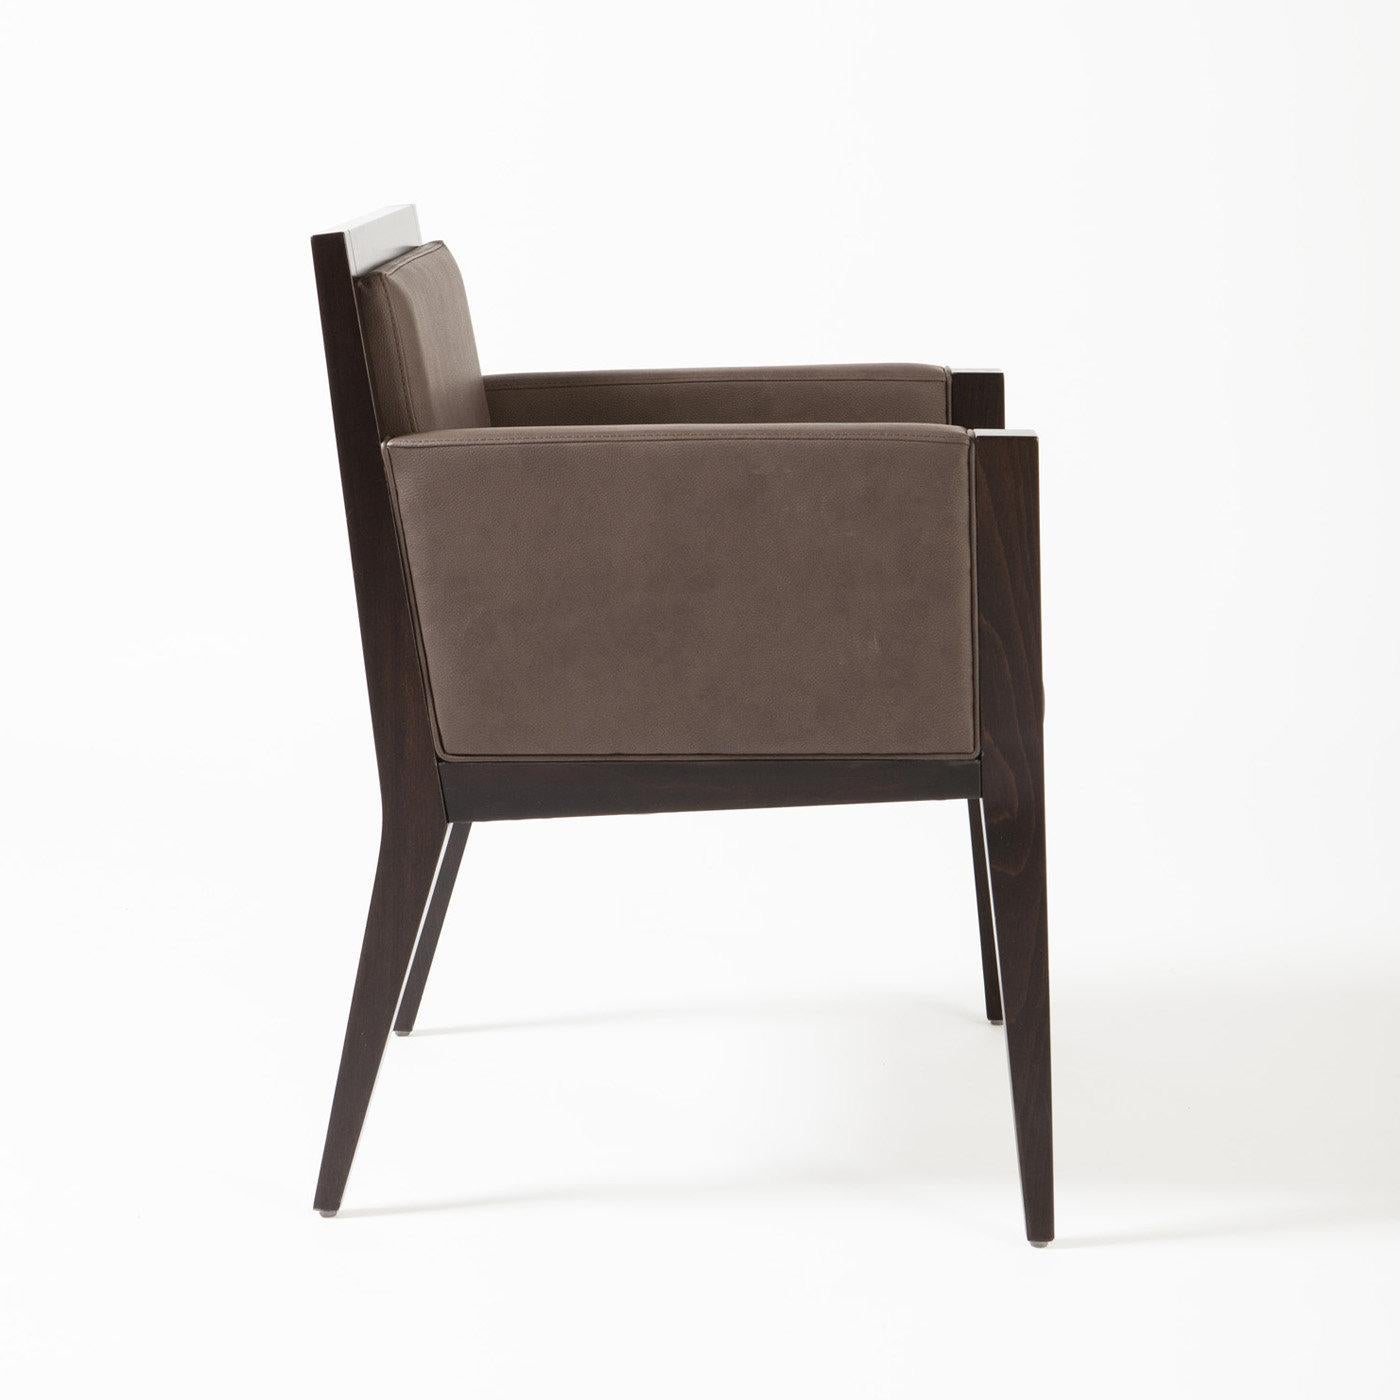 Dieser Sessel, der groß genug ist, um als Liebessitz zu dienen, ist vielseitig und modern und wird eine perfekte Ergänzung für einen Eingangsbereich oder einen charmanten Akzent in einem kleinen Wohnzimmer oder im Schlafzimmer sein. Dieses schlichte